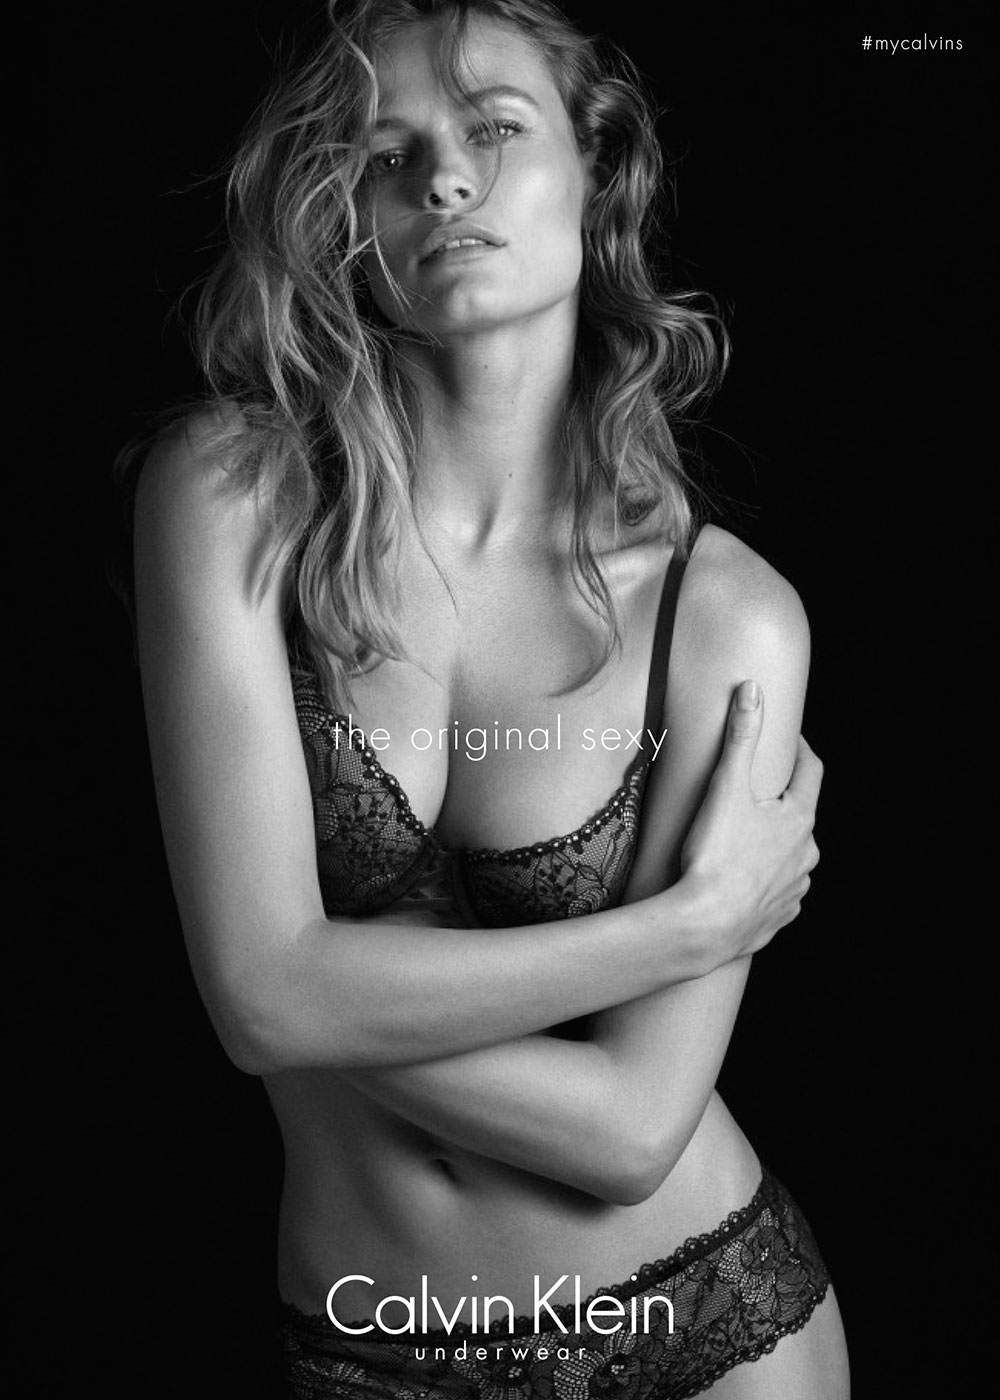 Edita Vilkeviciute in the new Calvin Klein Underwear campaign